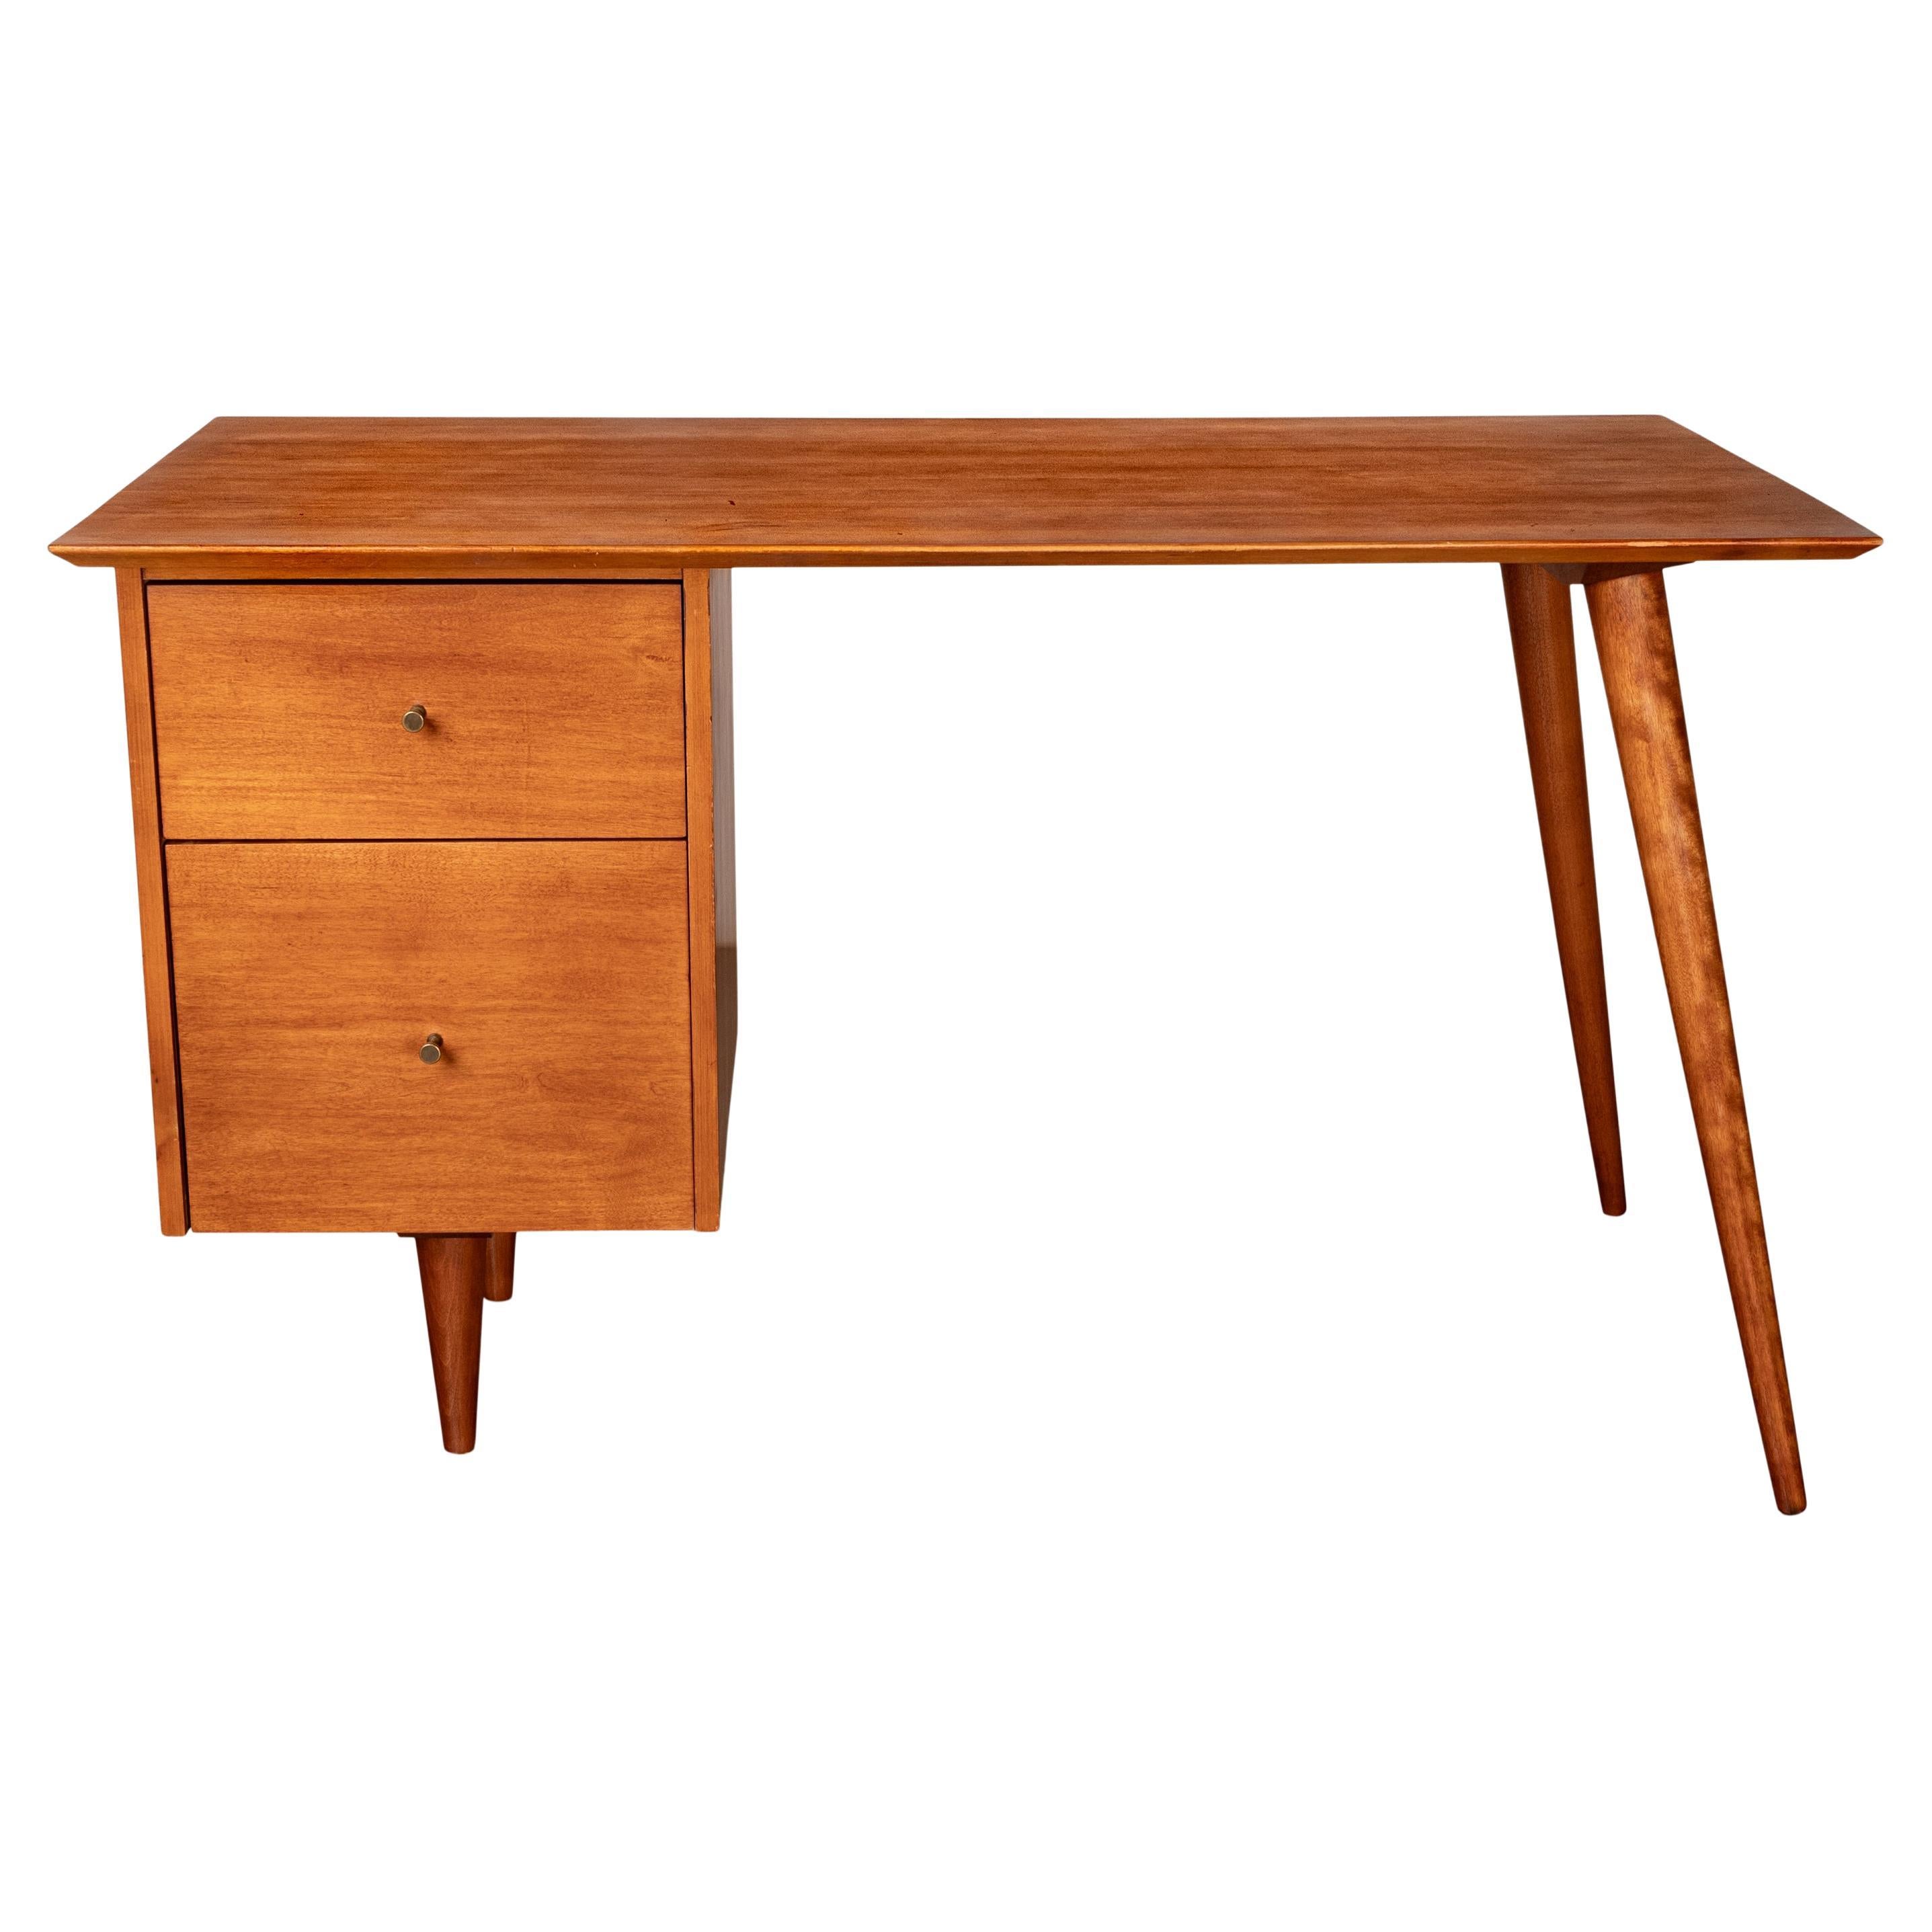 American Mid Century Modern Paul McCobb Planner Group Maple # 1560 Desk 1950's For Sale